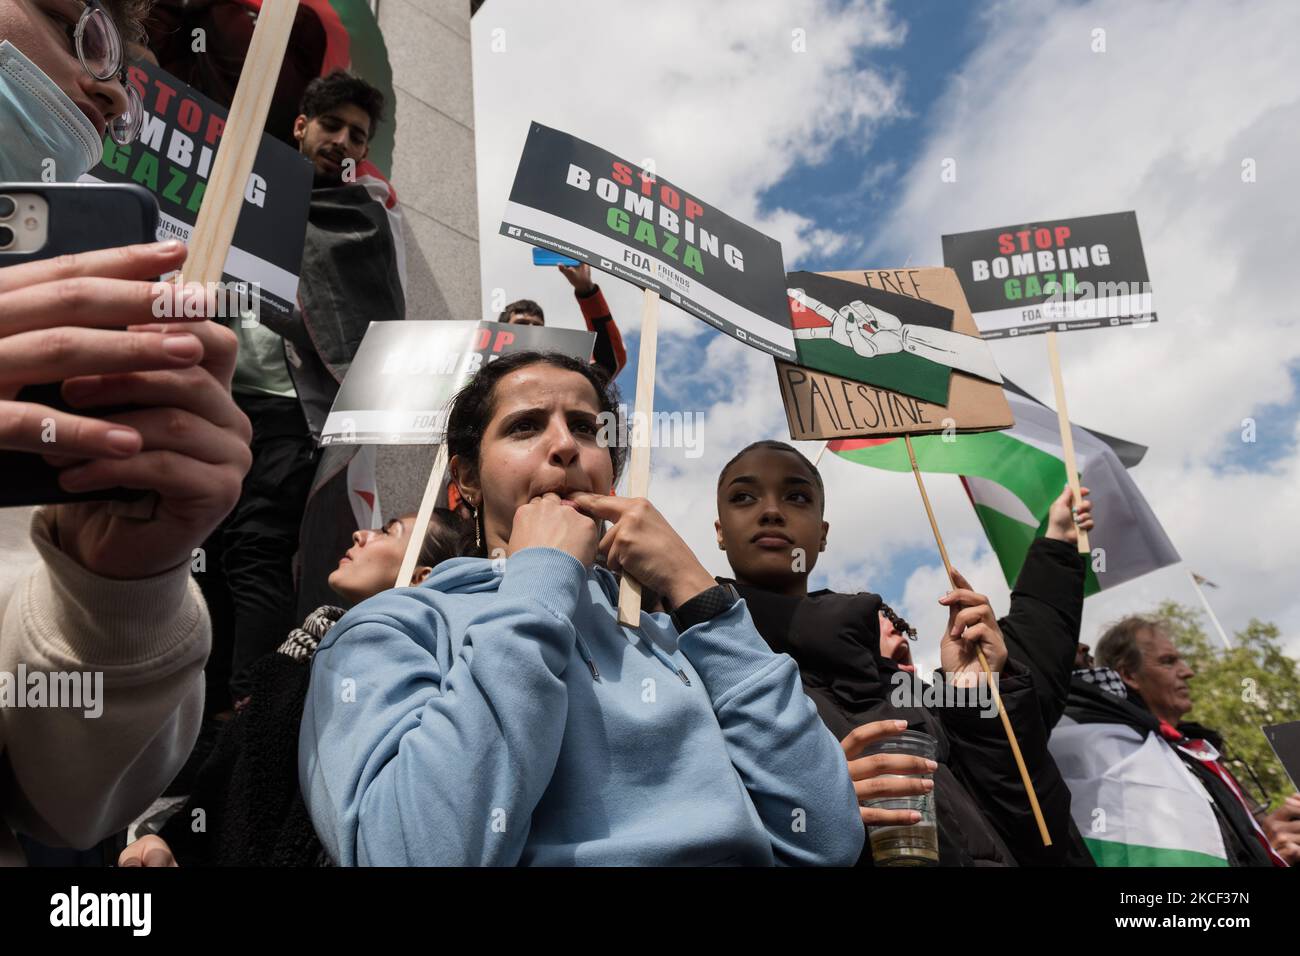 LONDRES, REINO UNIDO - 22 DE MAYO de 2021: Decenas de miles de manifestantes se reunieron en Trafalgar Square, en el centro de Londres, durante una manifestación en apoyo de Palestina, el 22 de mayo de 2021 en Londres, Inglaterra. Un alto el fuego entre Israel y Palestina entró en vigor el viernes después de 11 días de ataques aéreos que dejaron más de 250 muertos a medida que el conflicto se intensificaba debido a los desalojos planeados de familias palestinas de sus hogares por colonos judíos en el distrito de Sheikh Jarrah en Jerusalén oriental y a los enfrentamientos con la seguridad Fuerzas alrededor de la Ciudad Vieja durante el Ramadán. (Foto de Wiktor Szymanowicz/NurPhoto) Foto de stock